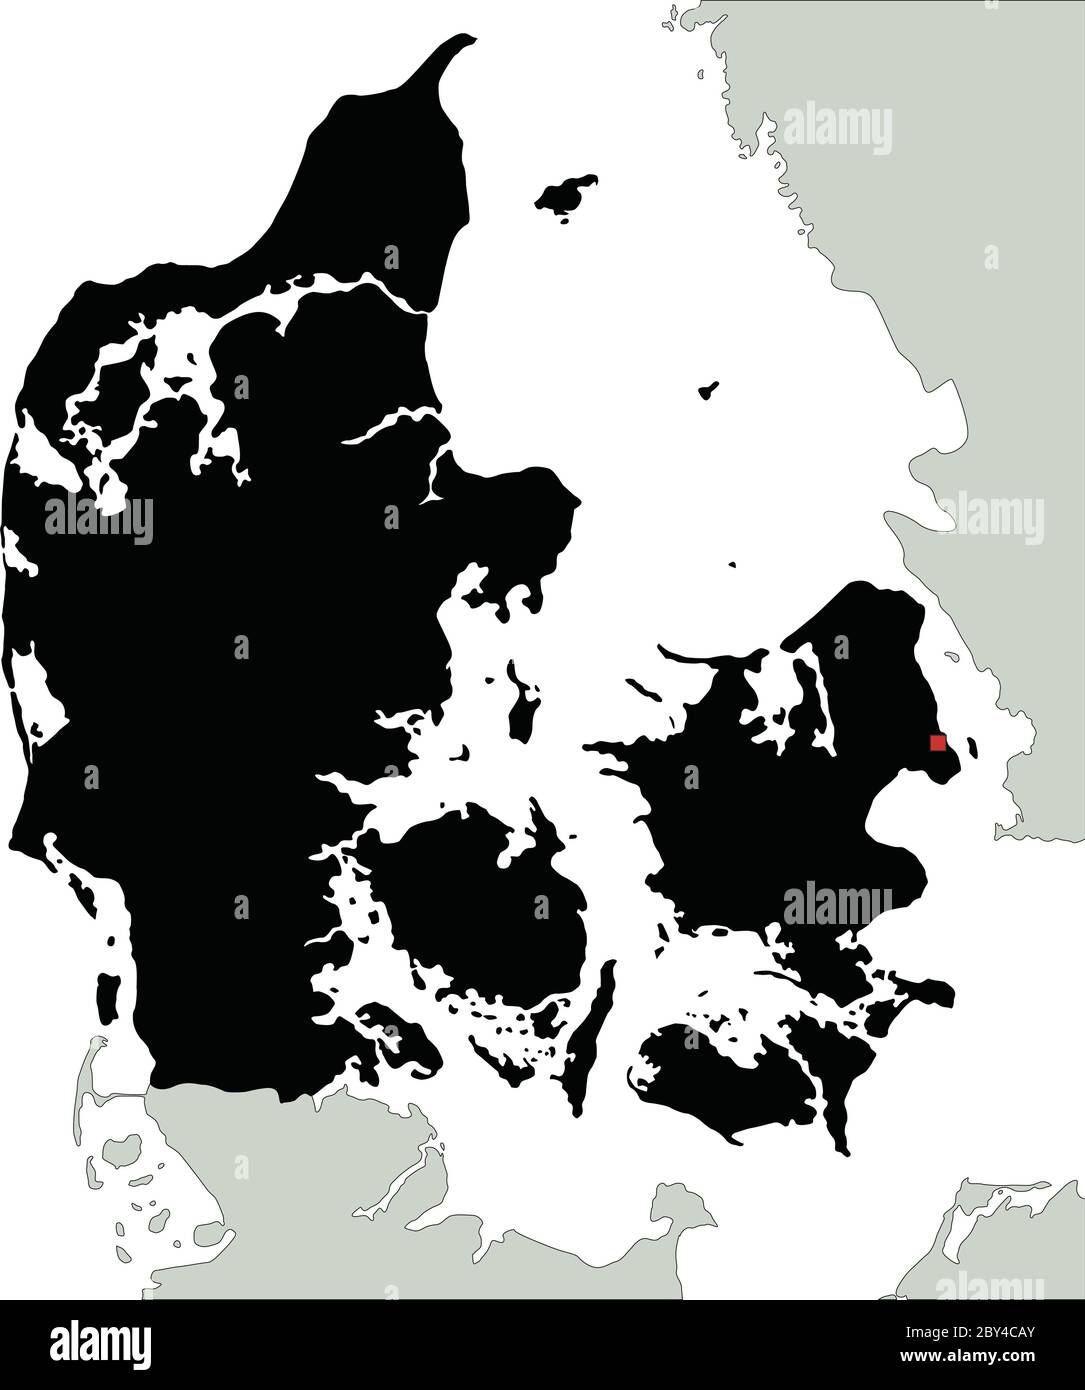 Mappa di Silhouette Danimarca estremamente dettagliata. Illustrazione Vettoriale